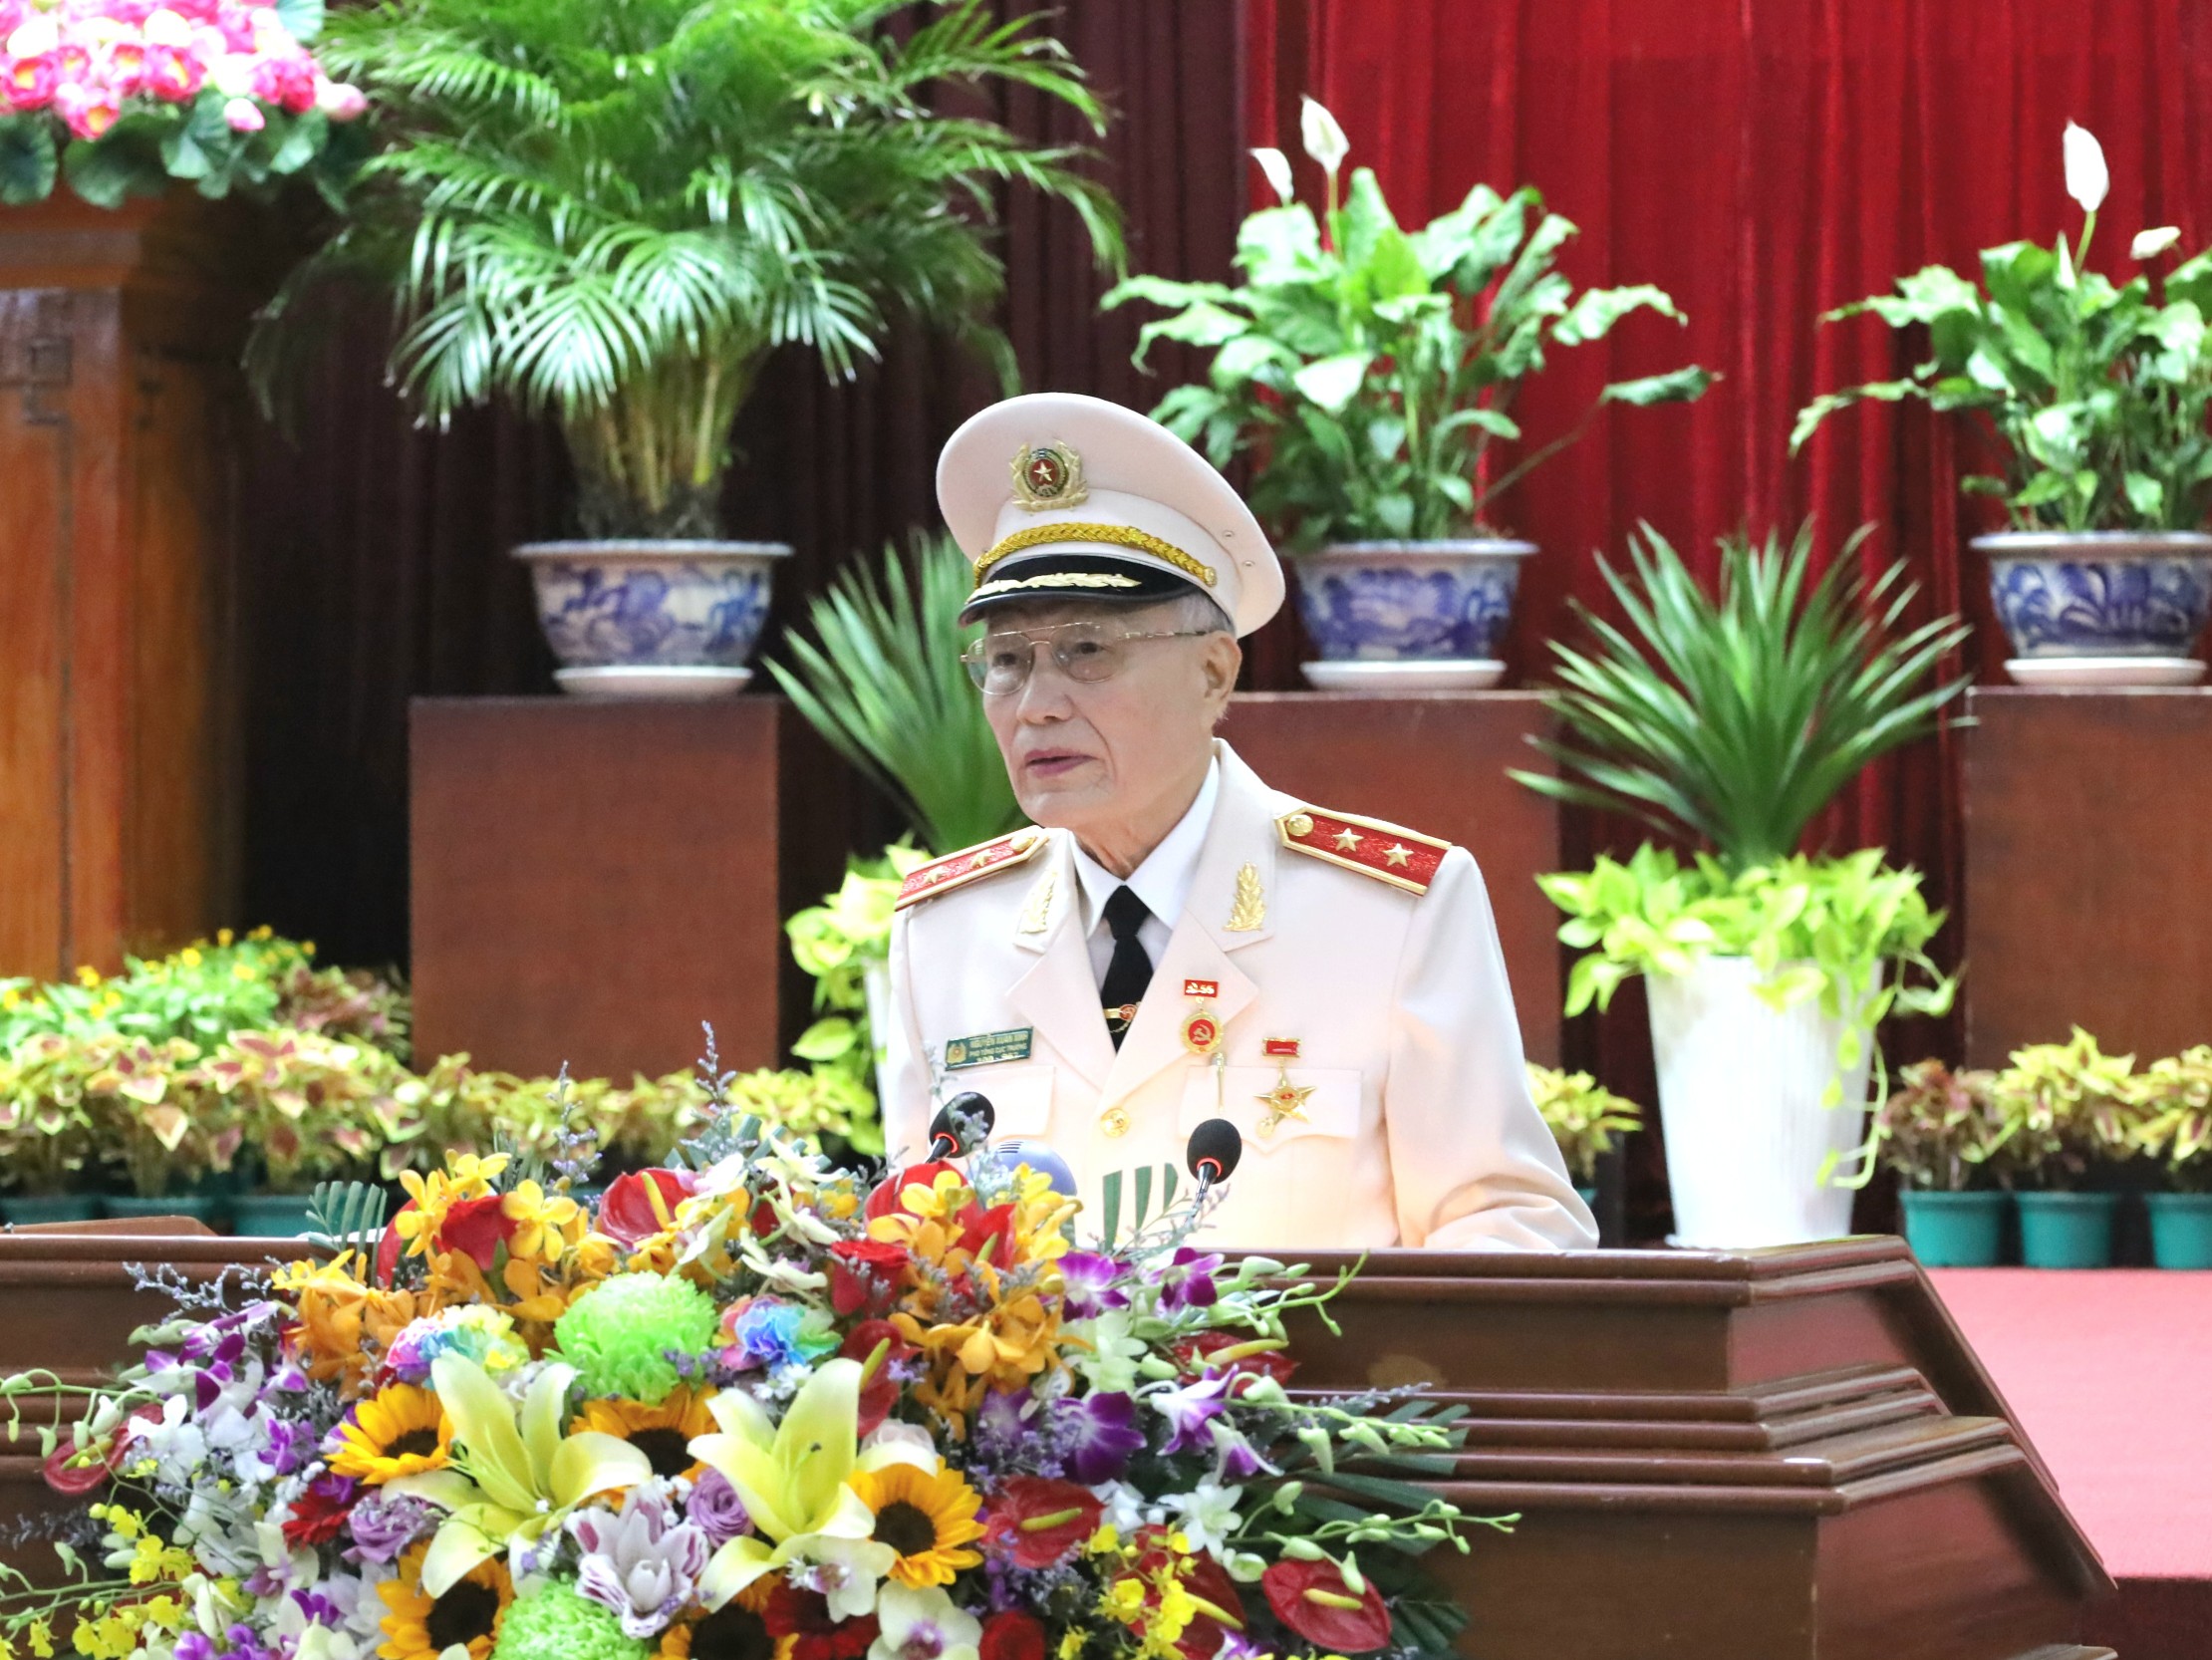 Trung tướng Nguyễn Xuân Xinh - Anh hùng lực lượng vũ trang nhân dân, nguyên Phó Tổng Cục trưởng Tổng cục Tình báo, Bộ Công an phát biểu tại buổi họp mặt.